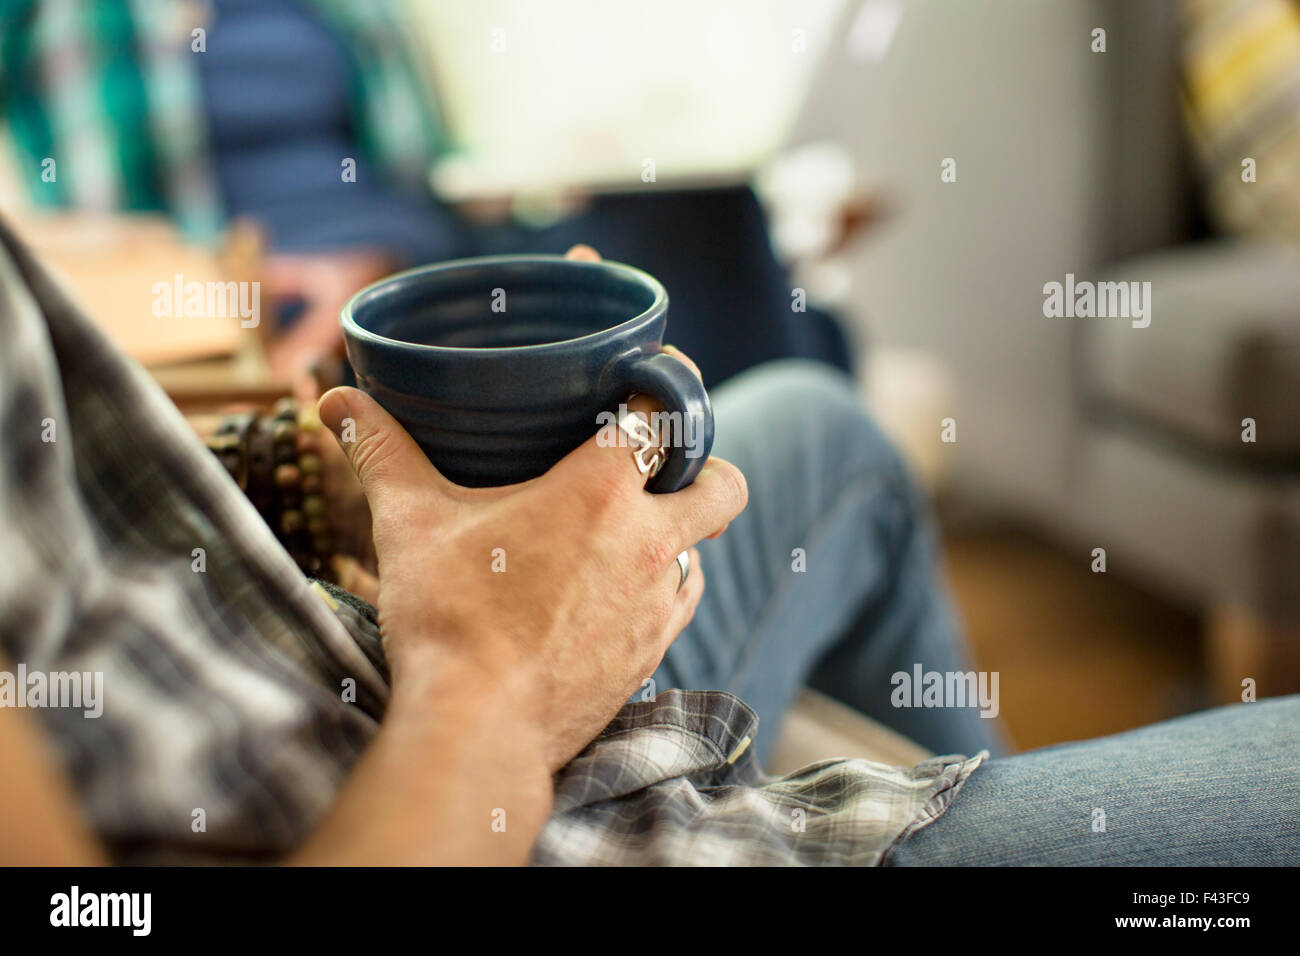 Une personne titulaire d'un grand noir chine mug, assis sur une chaise. Banque D'Images